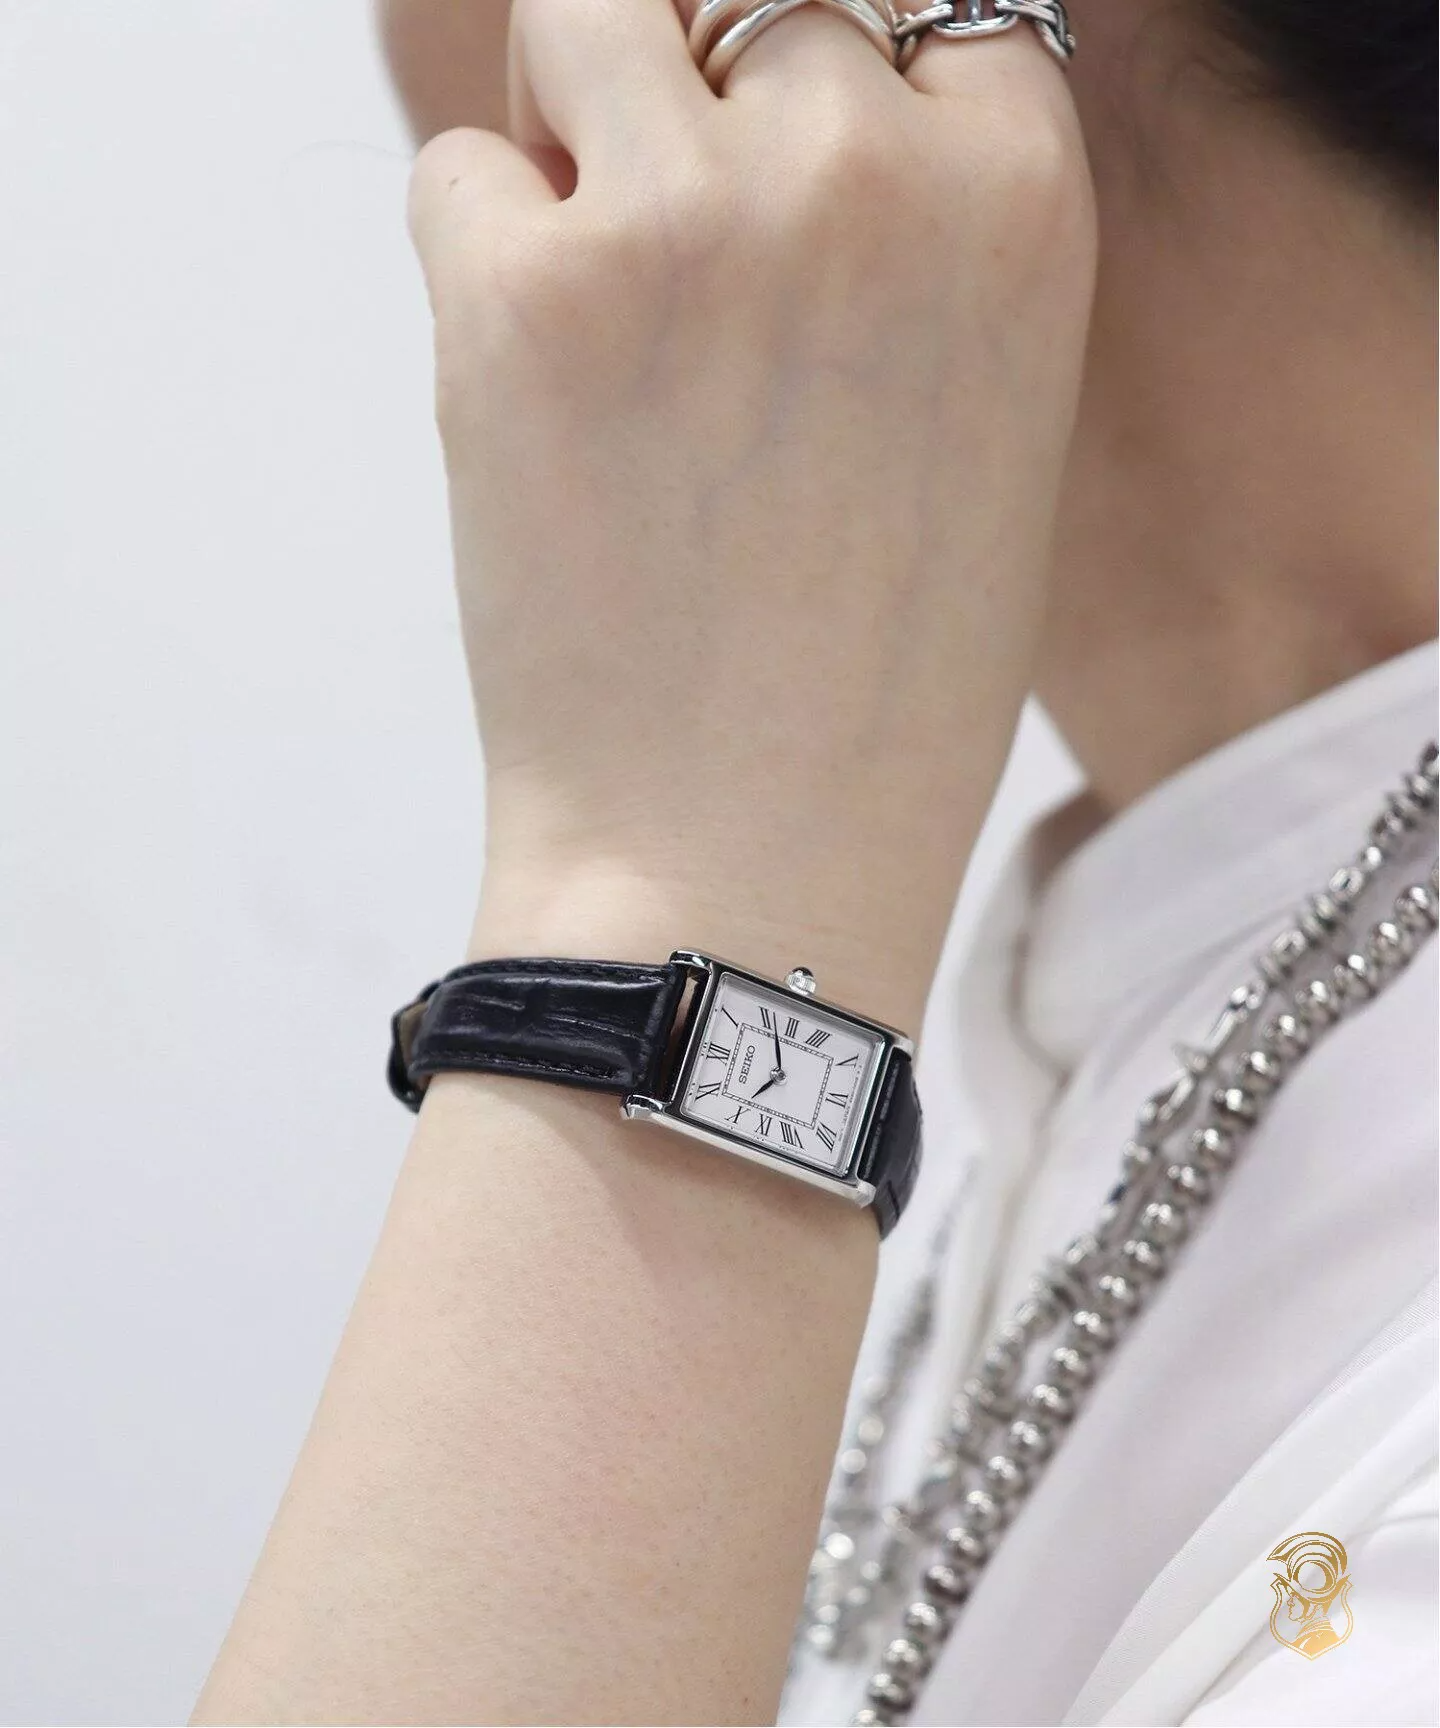 Cặp đồng hồ Seiko White Dial Black Leather